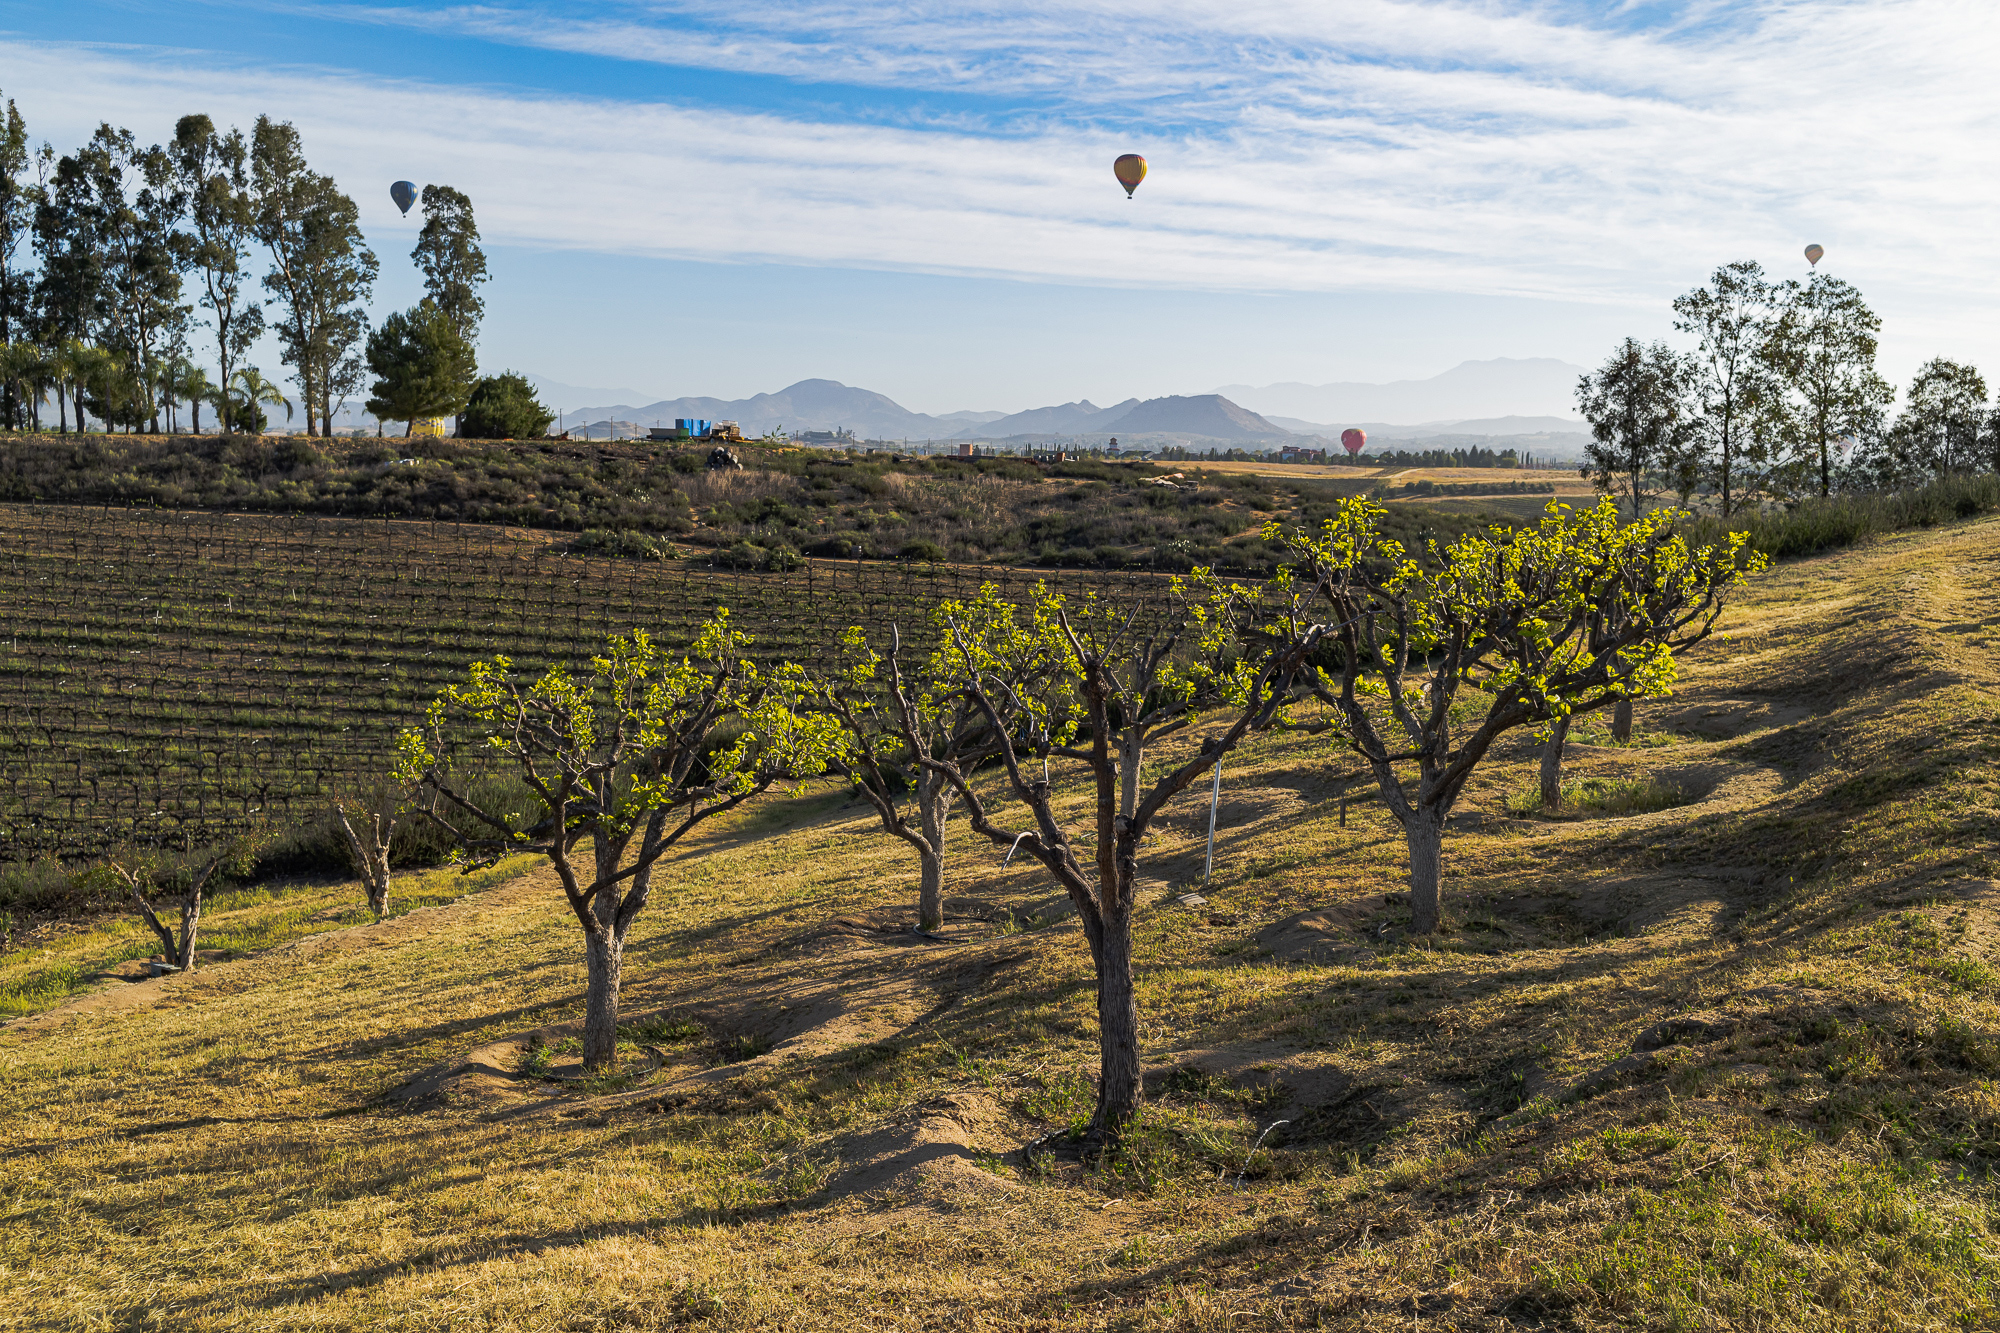 Hot Air Balloons above Vineyards, Temecula, CA